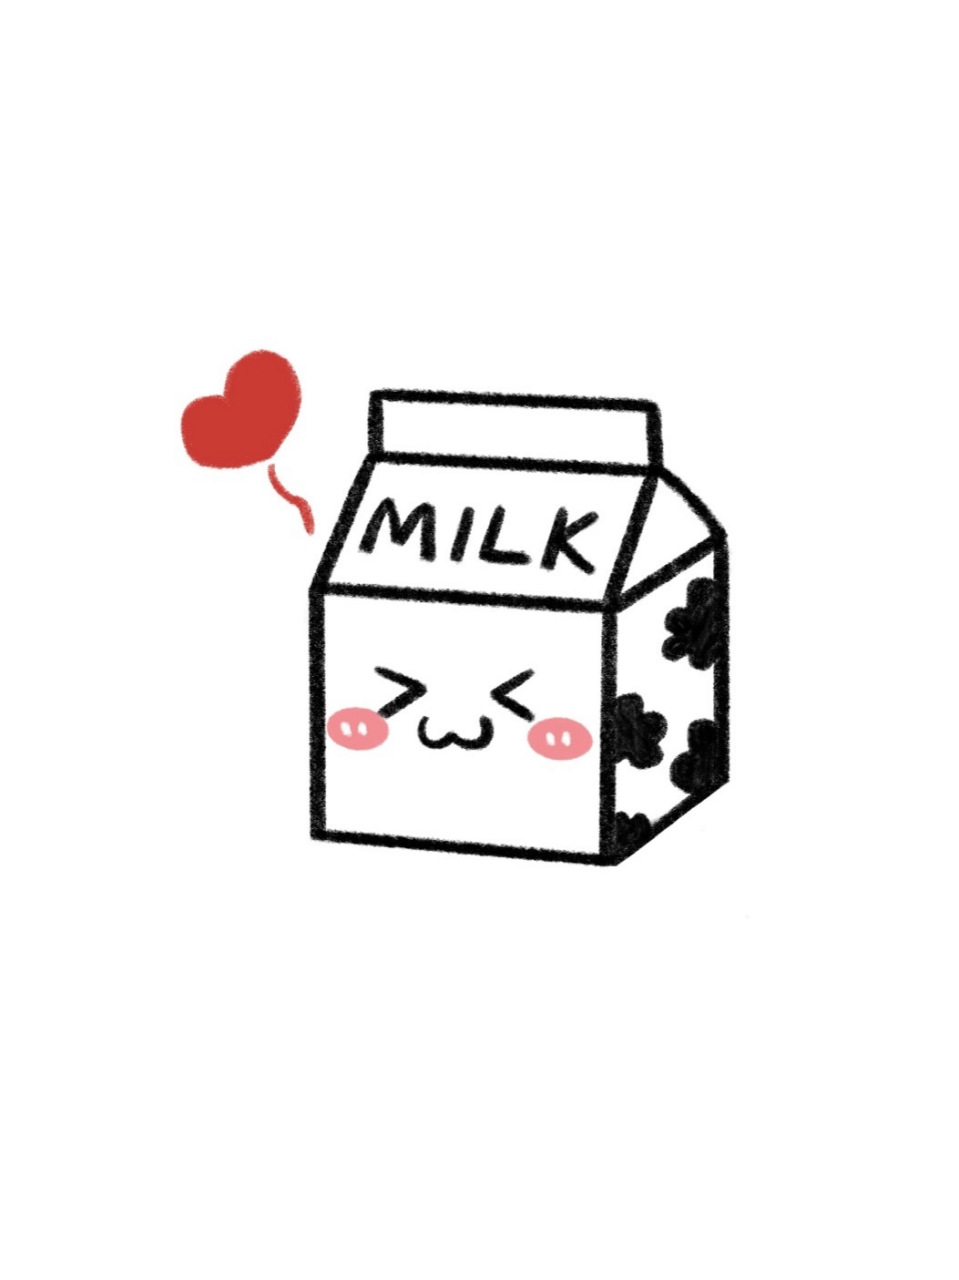 金典牛奶简笔画图片